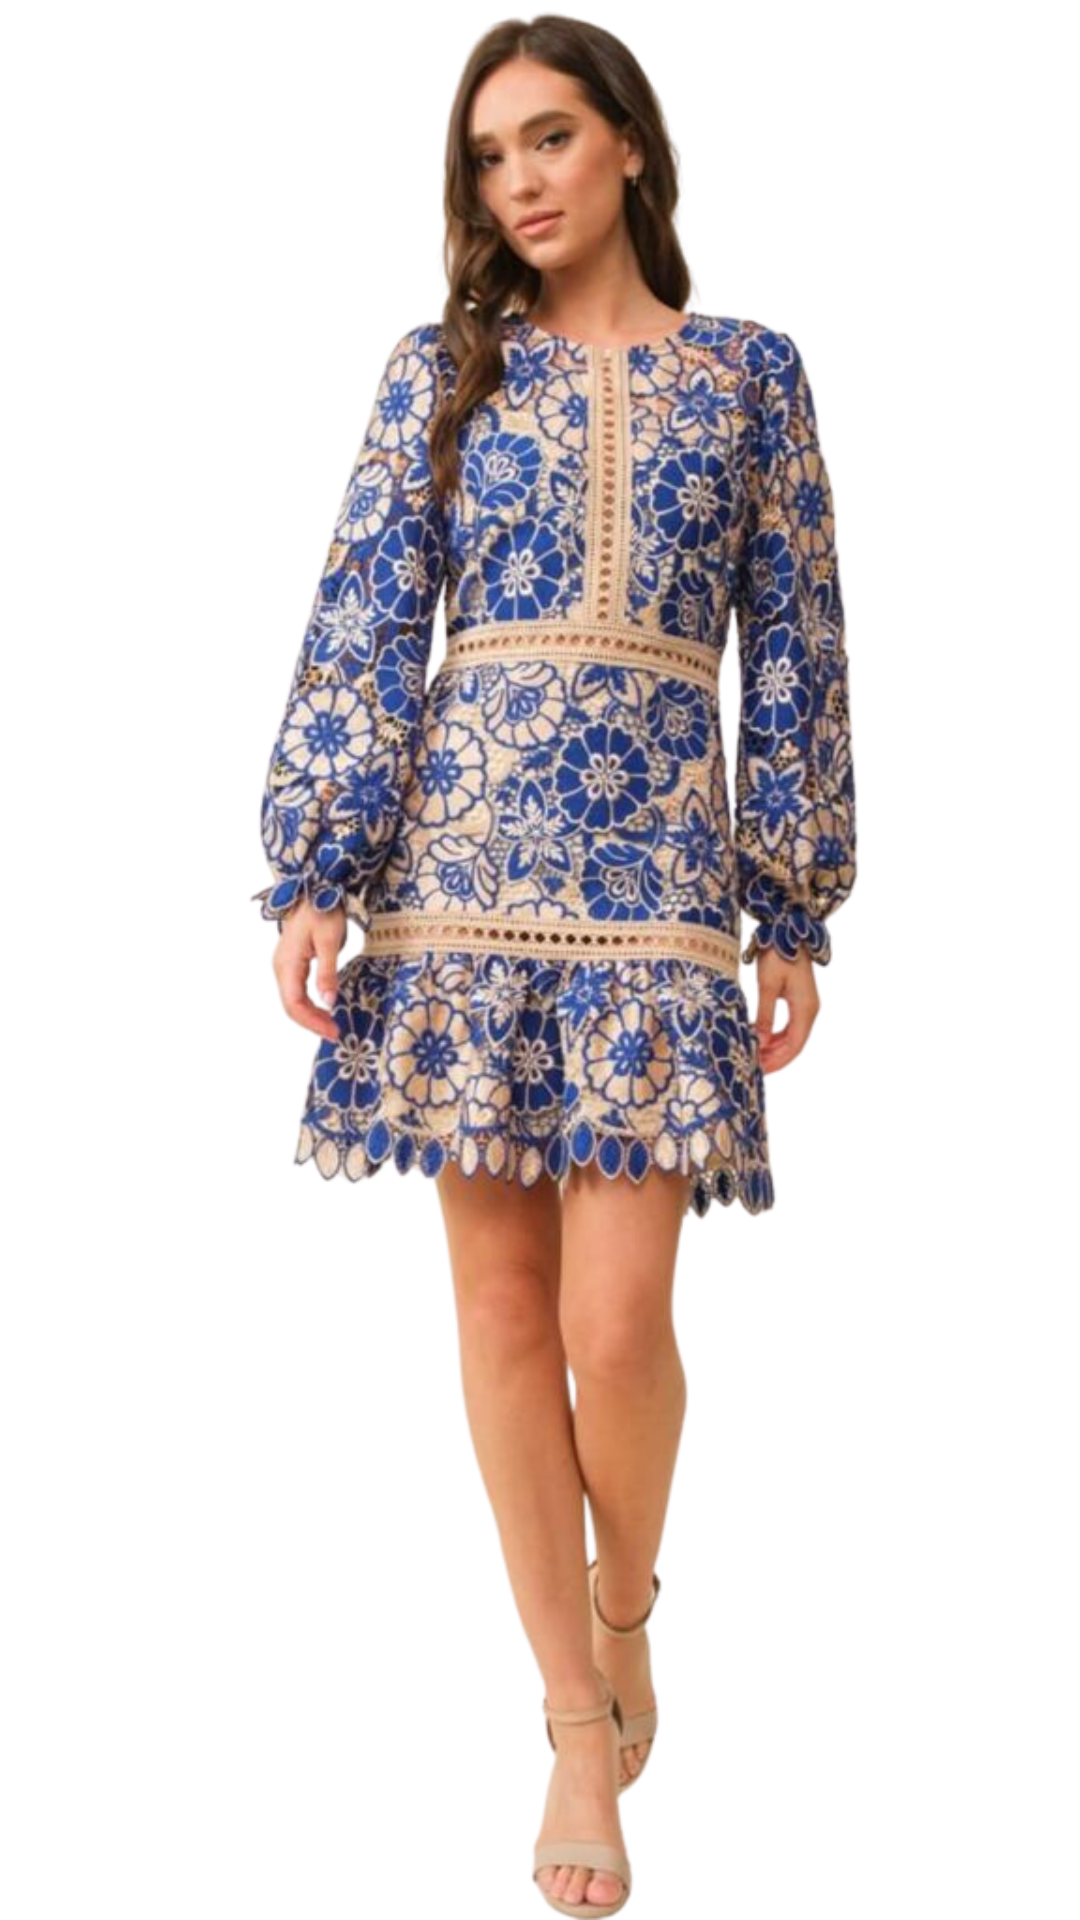 Blue Crochet Dress